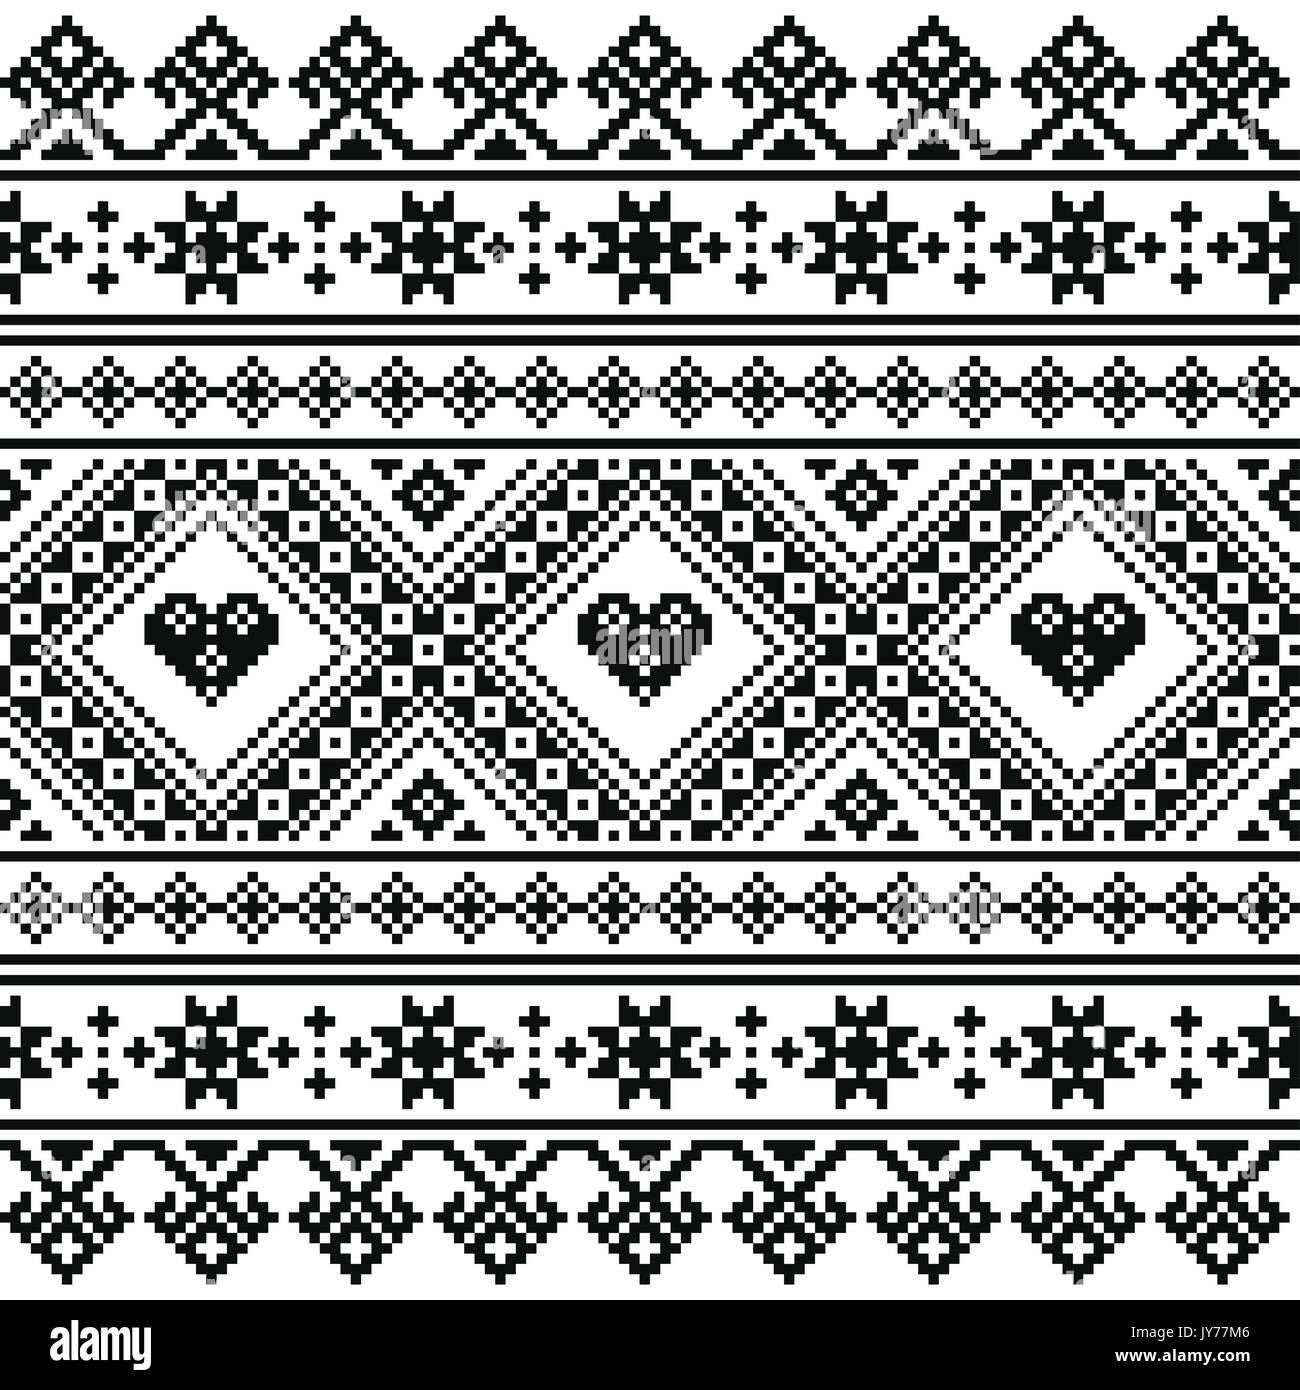 Tradizionale ucraino o bielorusso arte folk a maglia ricamo nero pattern  Seamless design monocromatico dall'Ucraina o la Bielorussia su sfondo  bianco Immagine e Vettoriale - Alamy